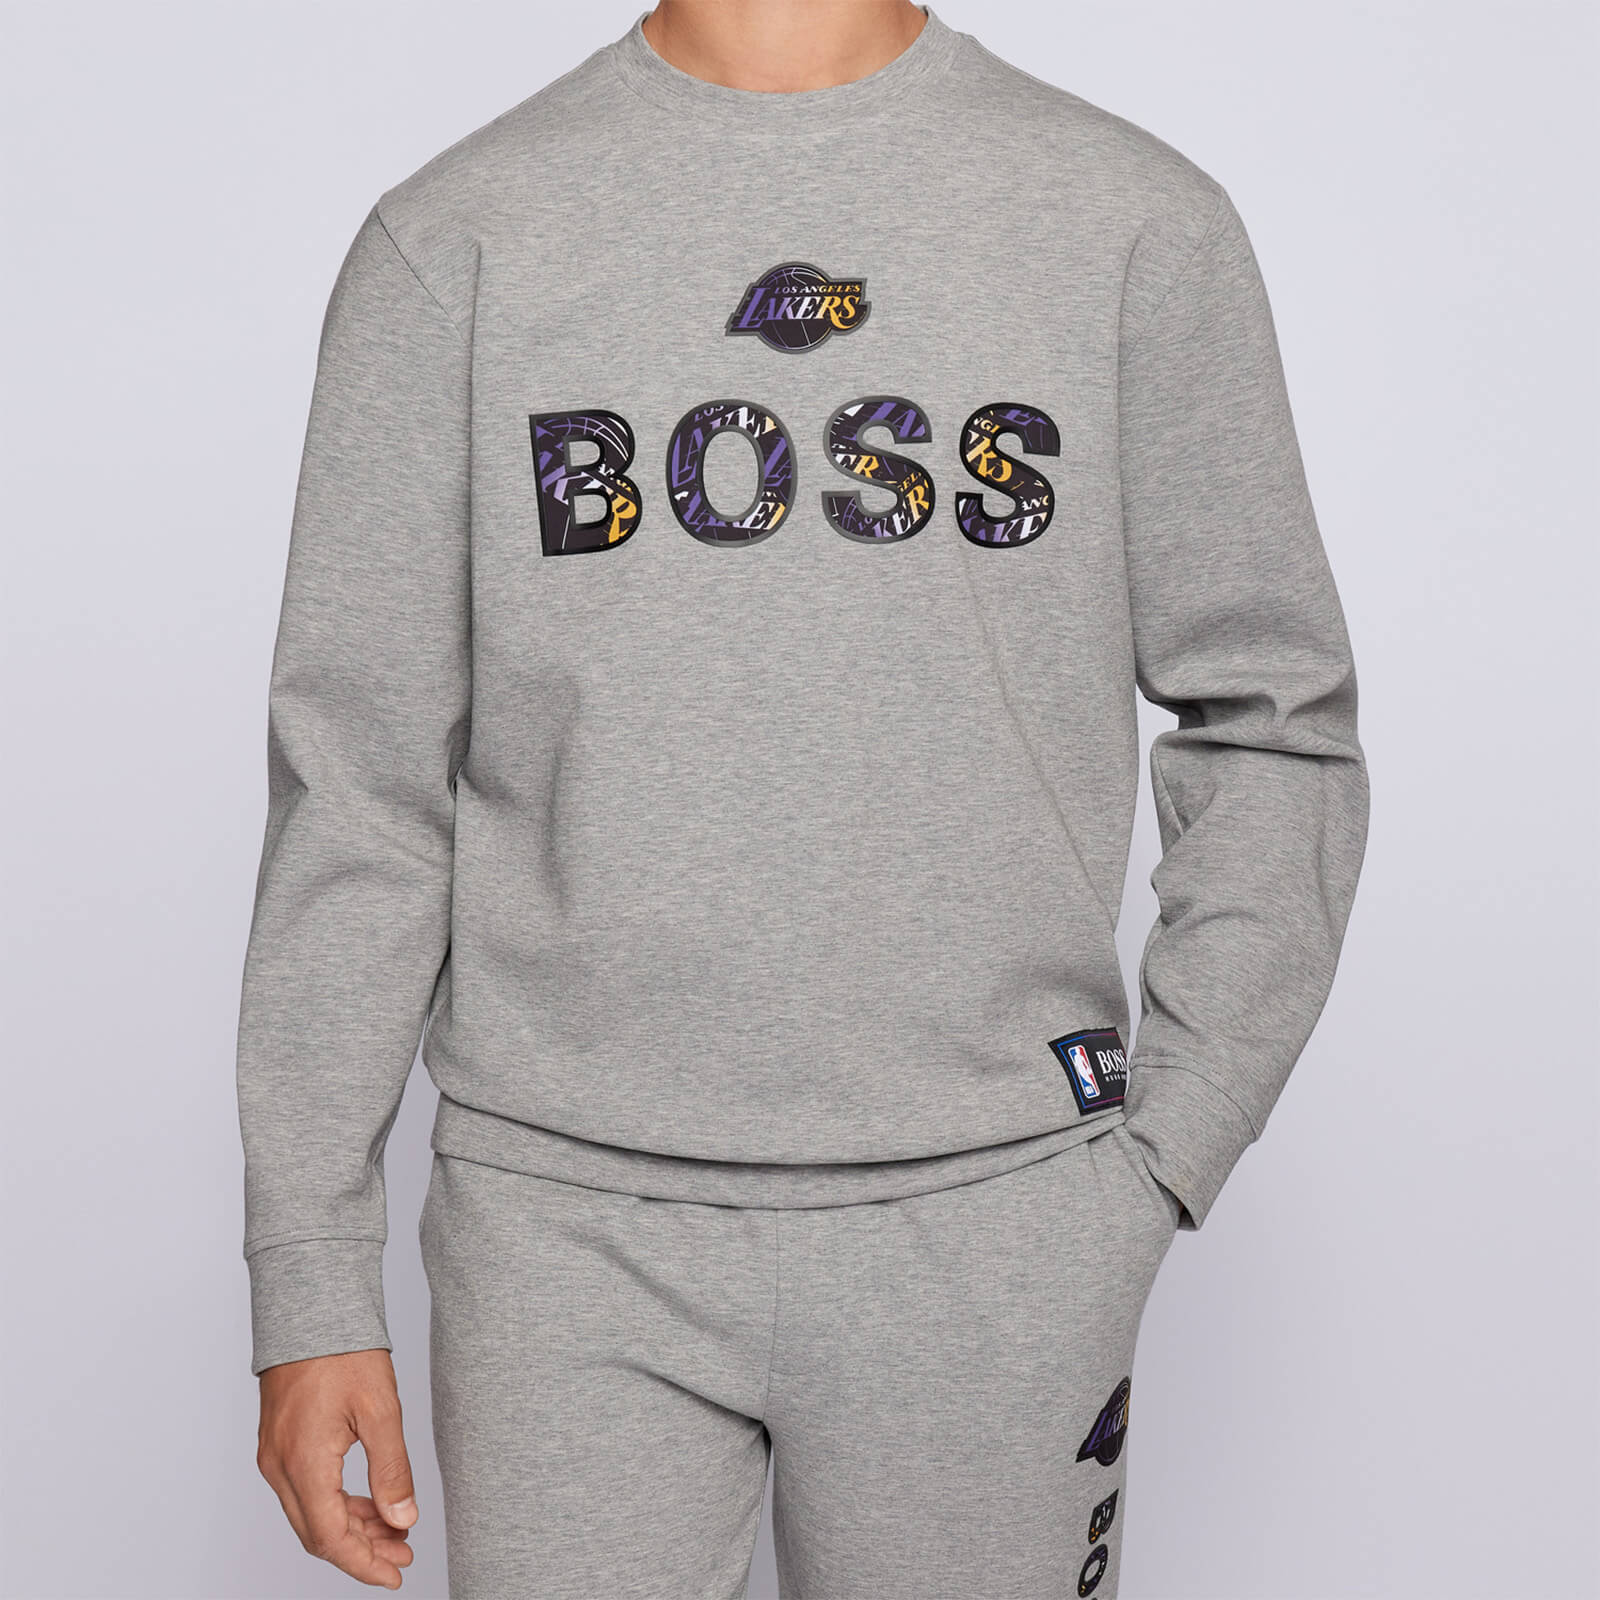 BOSS X NBA Men's Lakers Crewneck Sweatshirt - Medium Grey